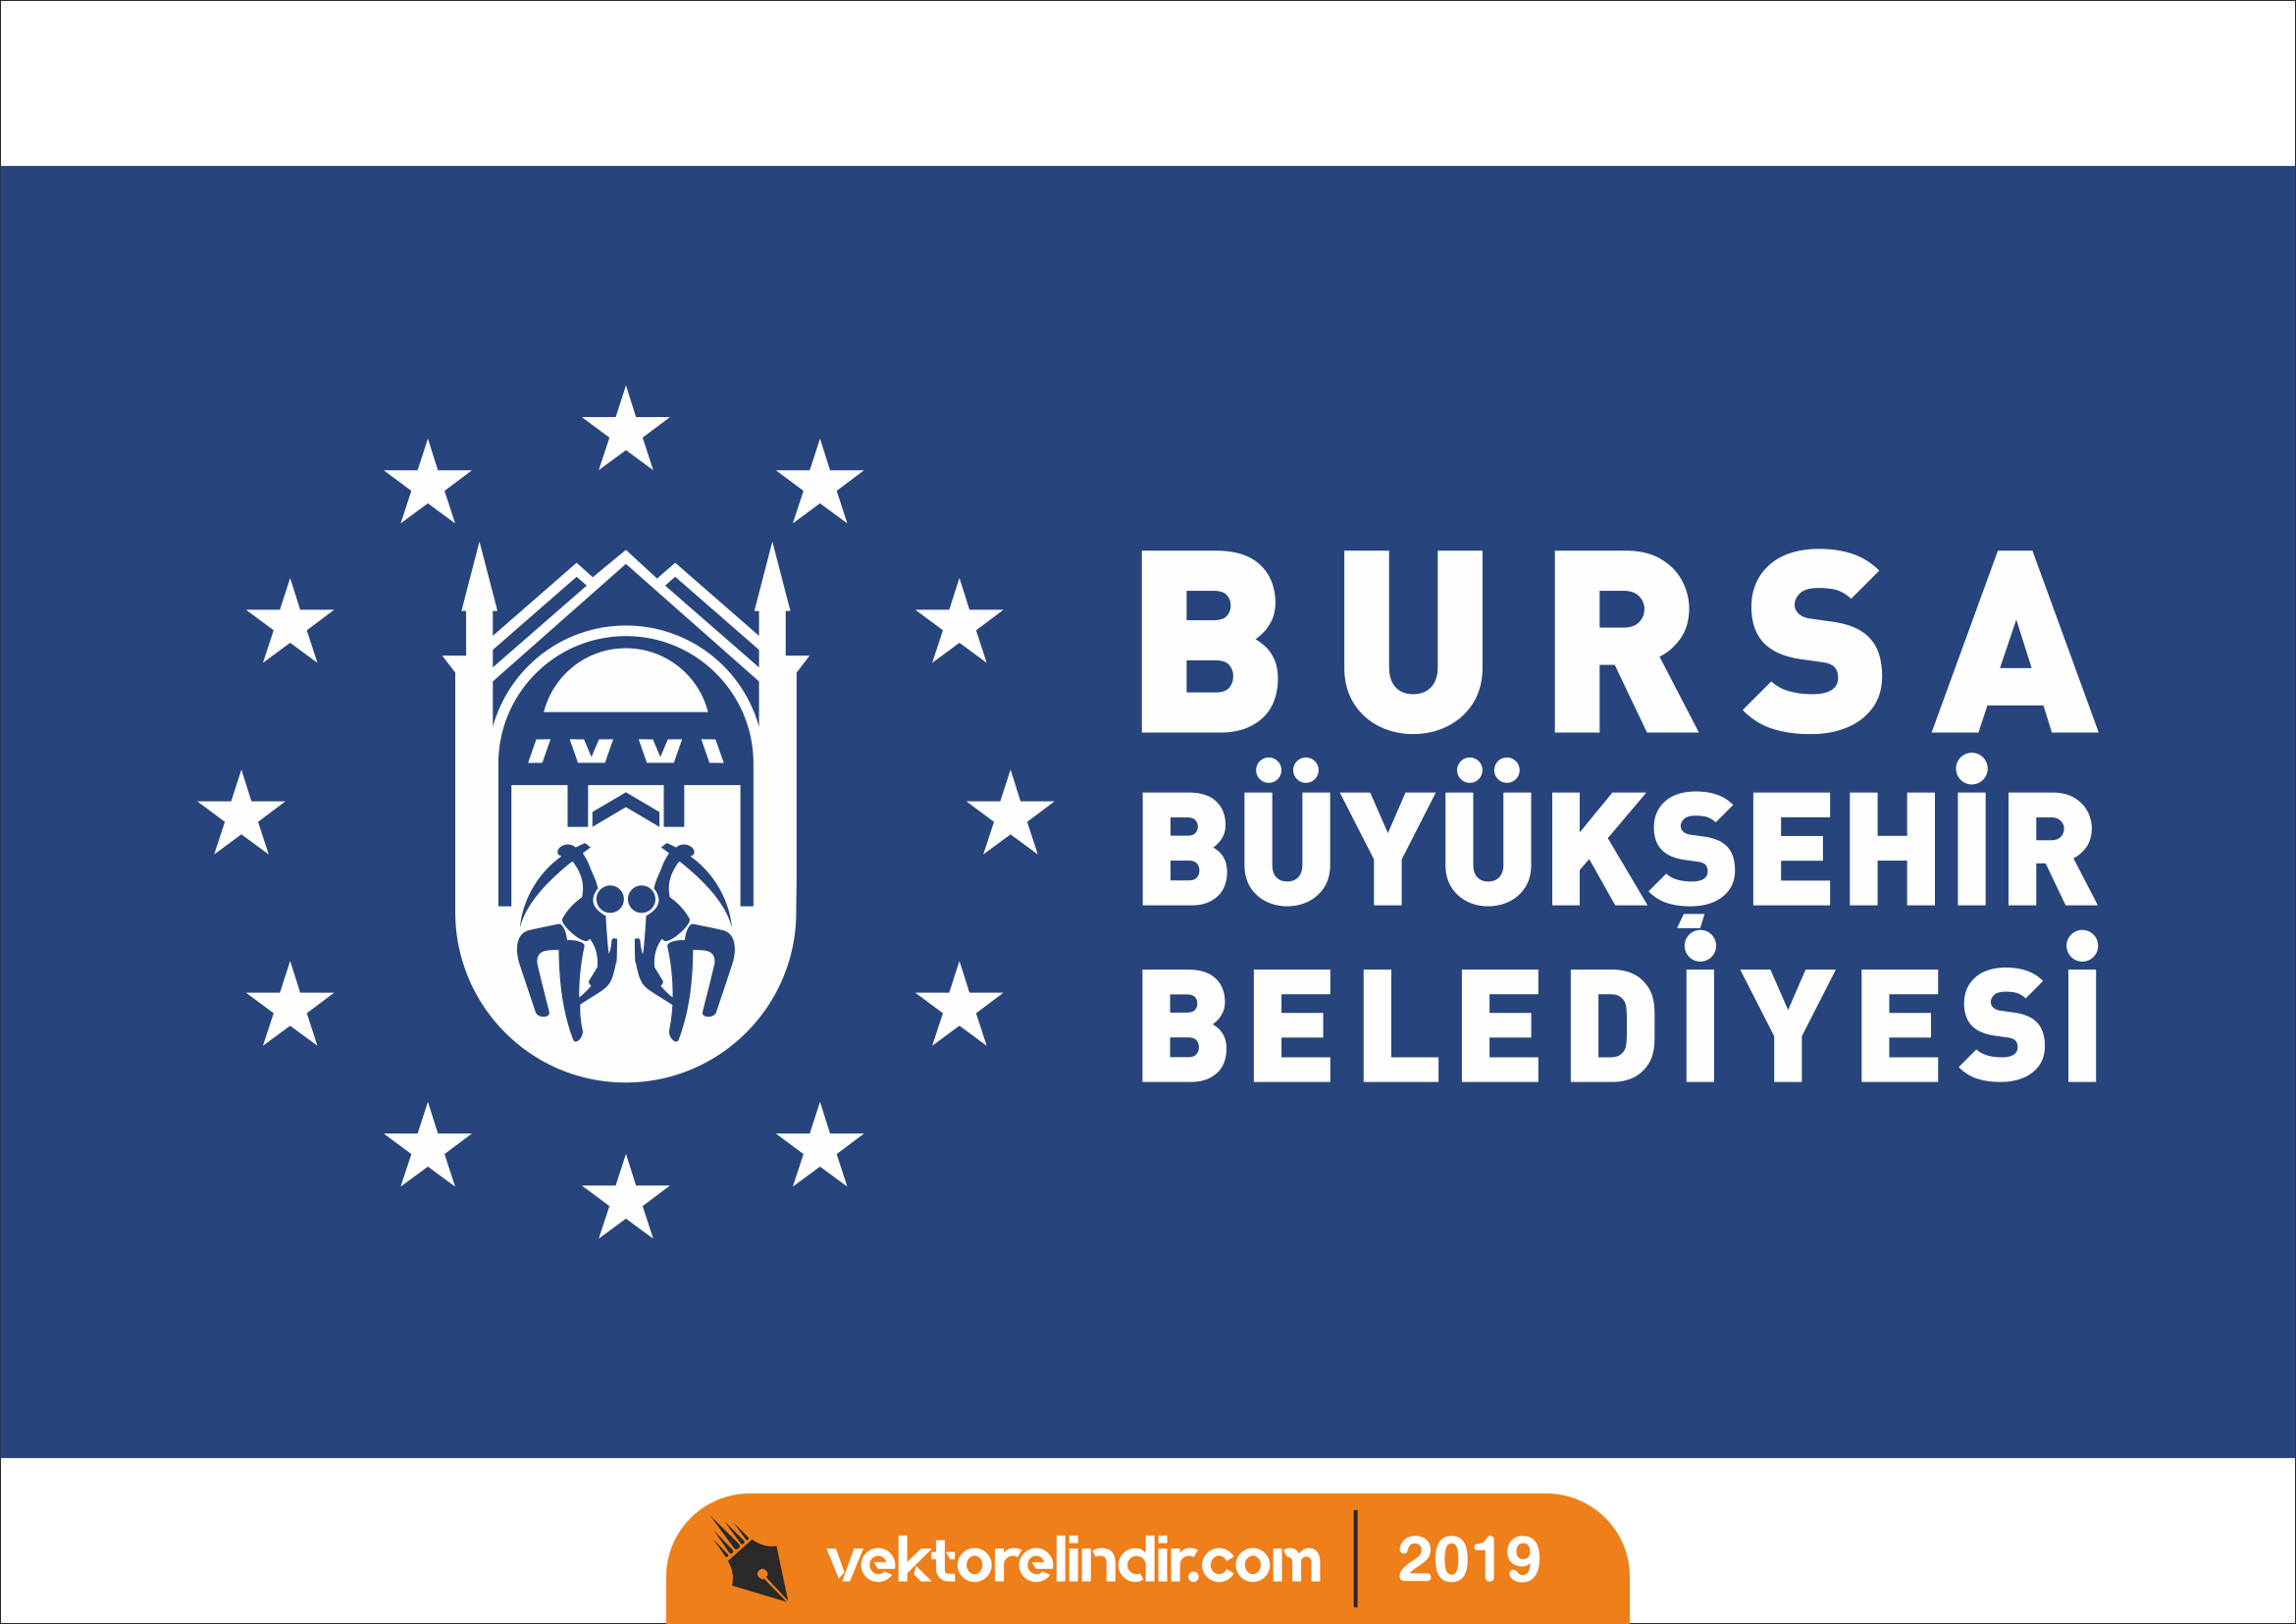 Bursa Büyükşehir Belediyesi Logo, Amblem